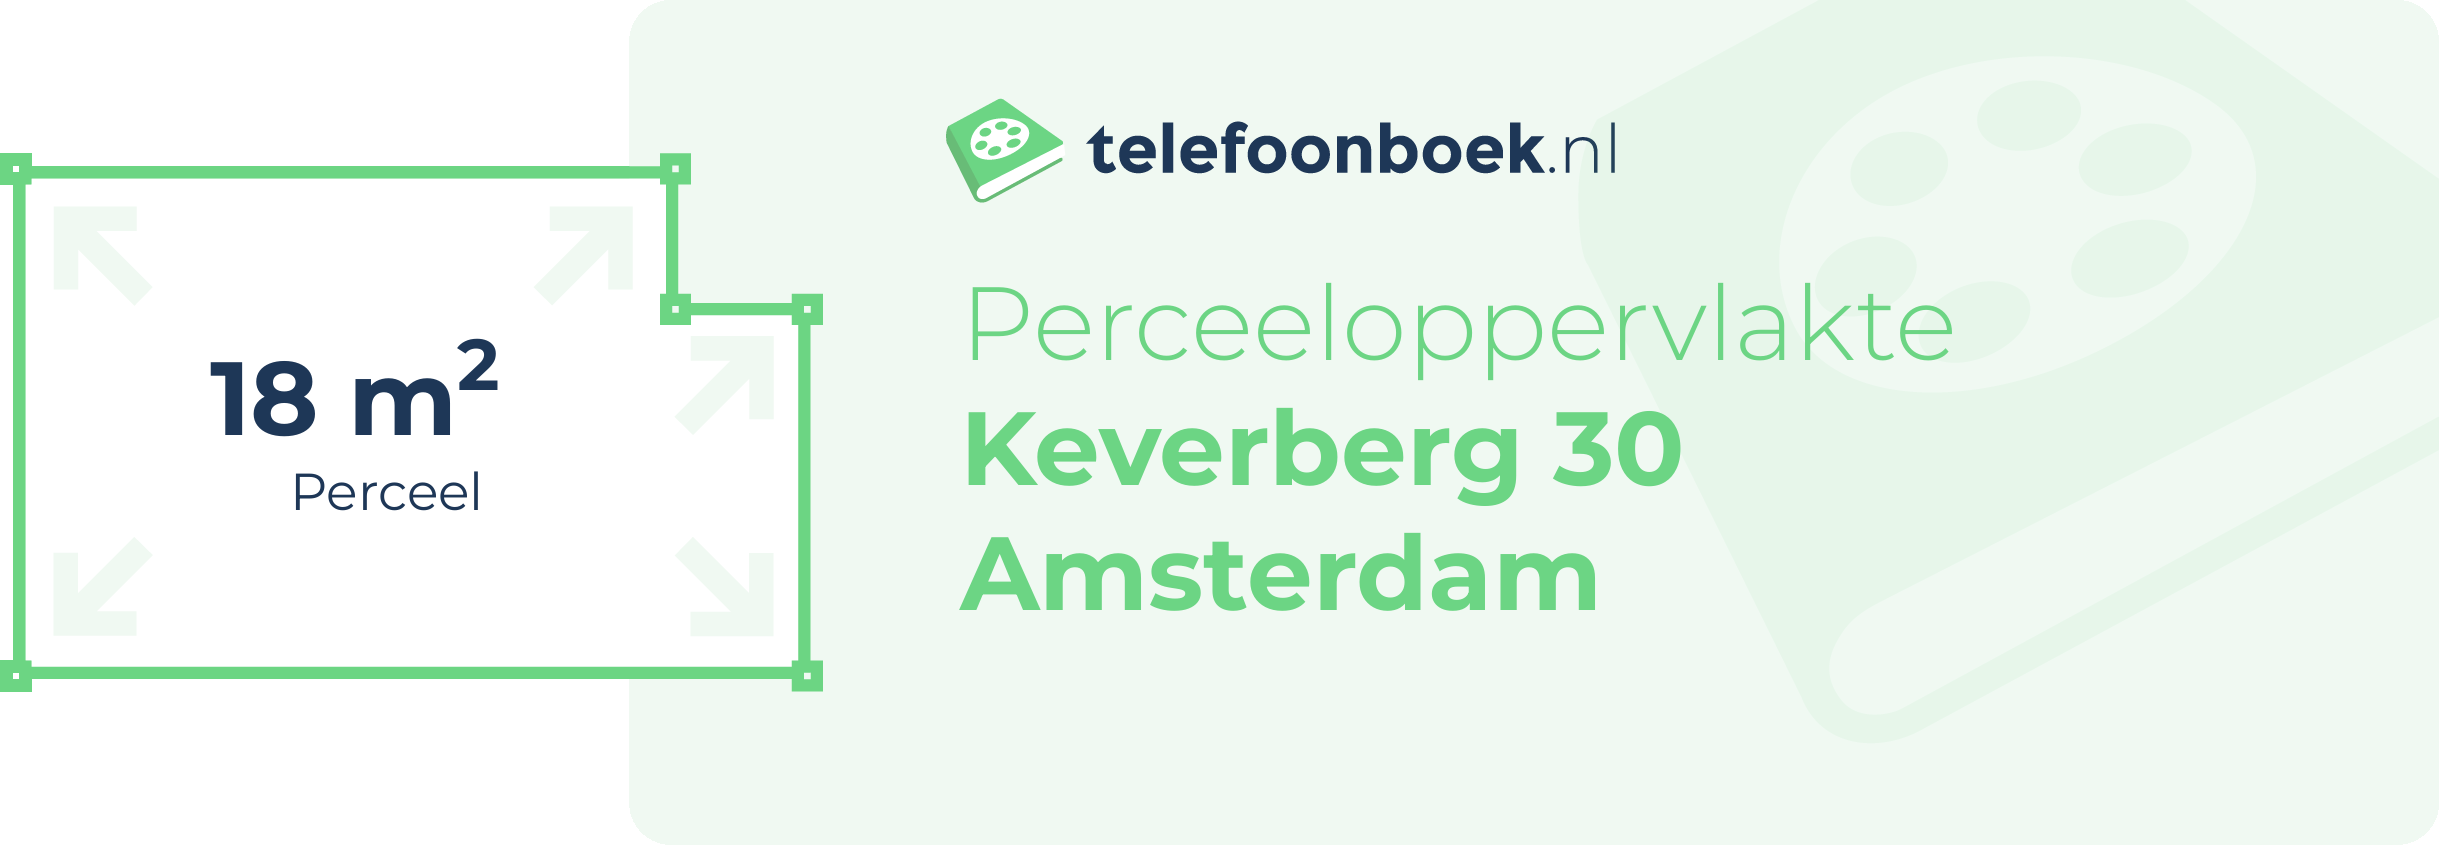 Perceeloppervlakte Keverberg 30 Amsterdam